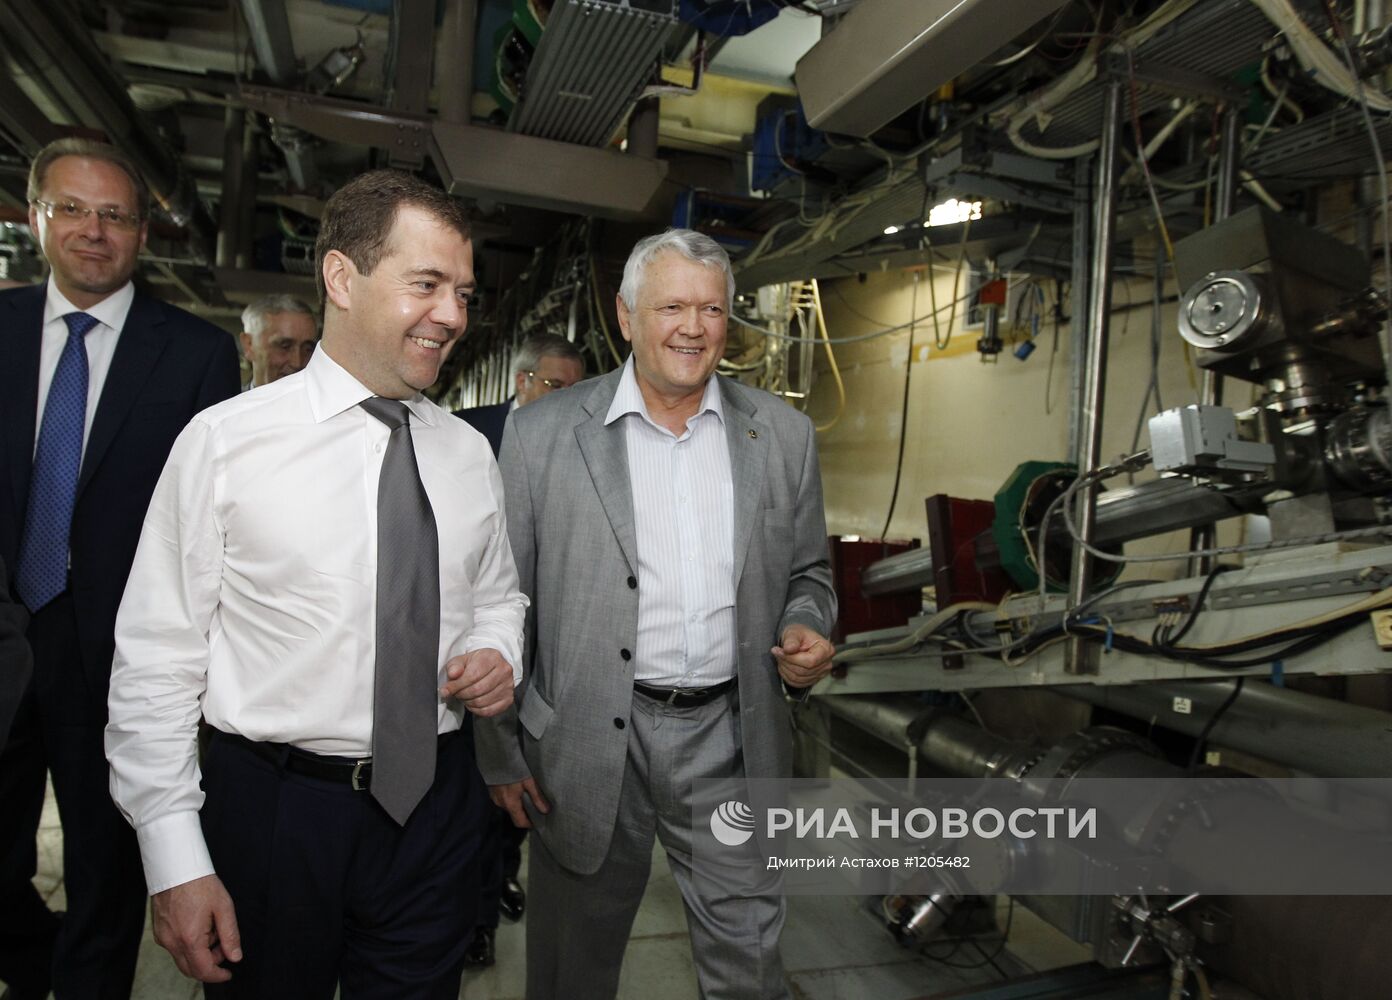 Рабочая поездка Д.Медведева по Сибири. Третий день